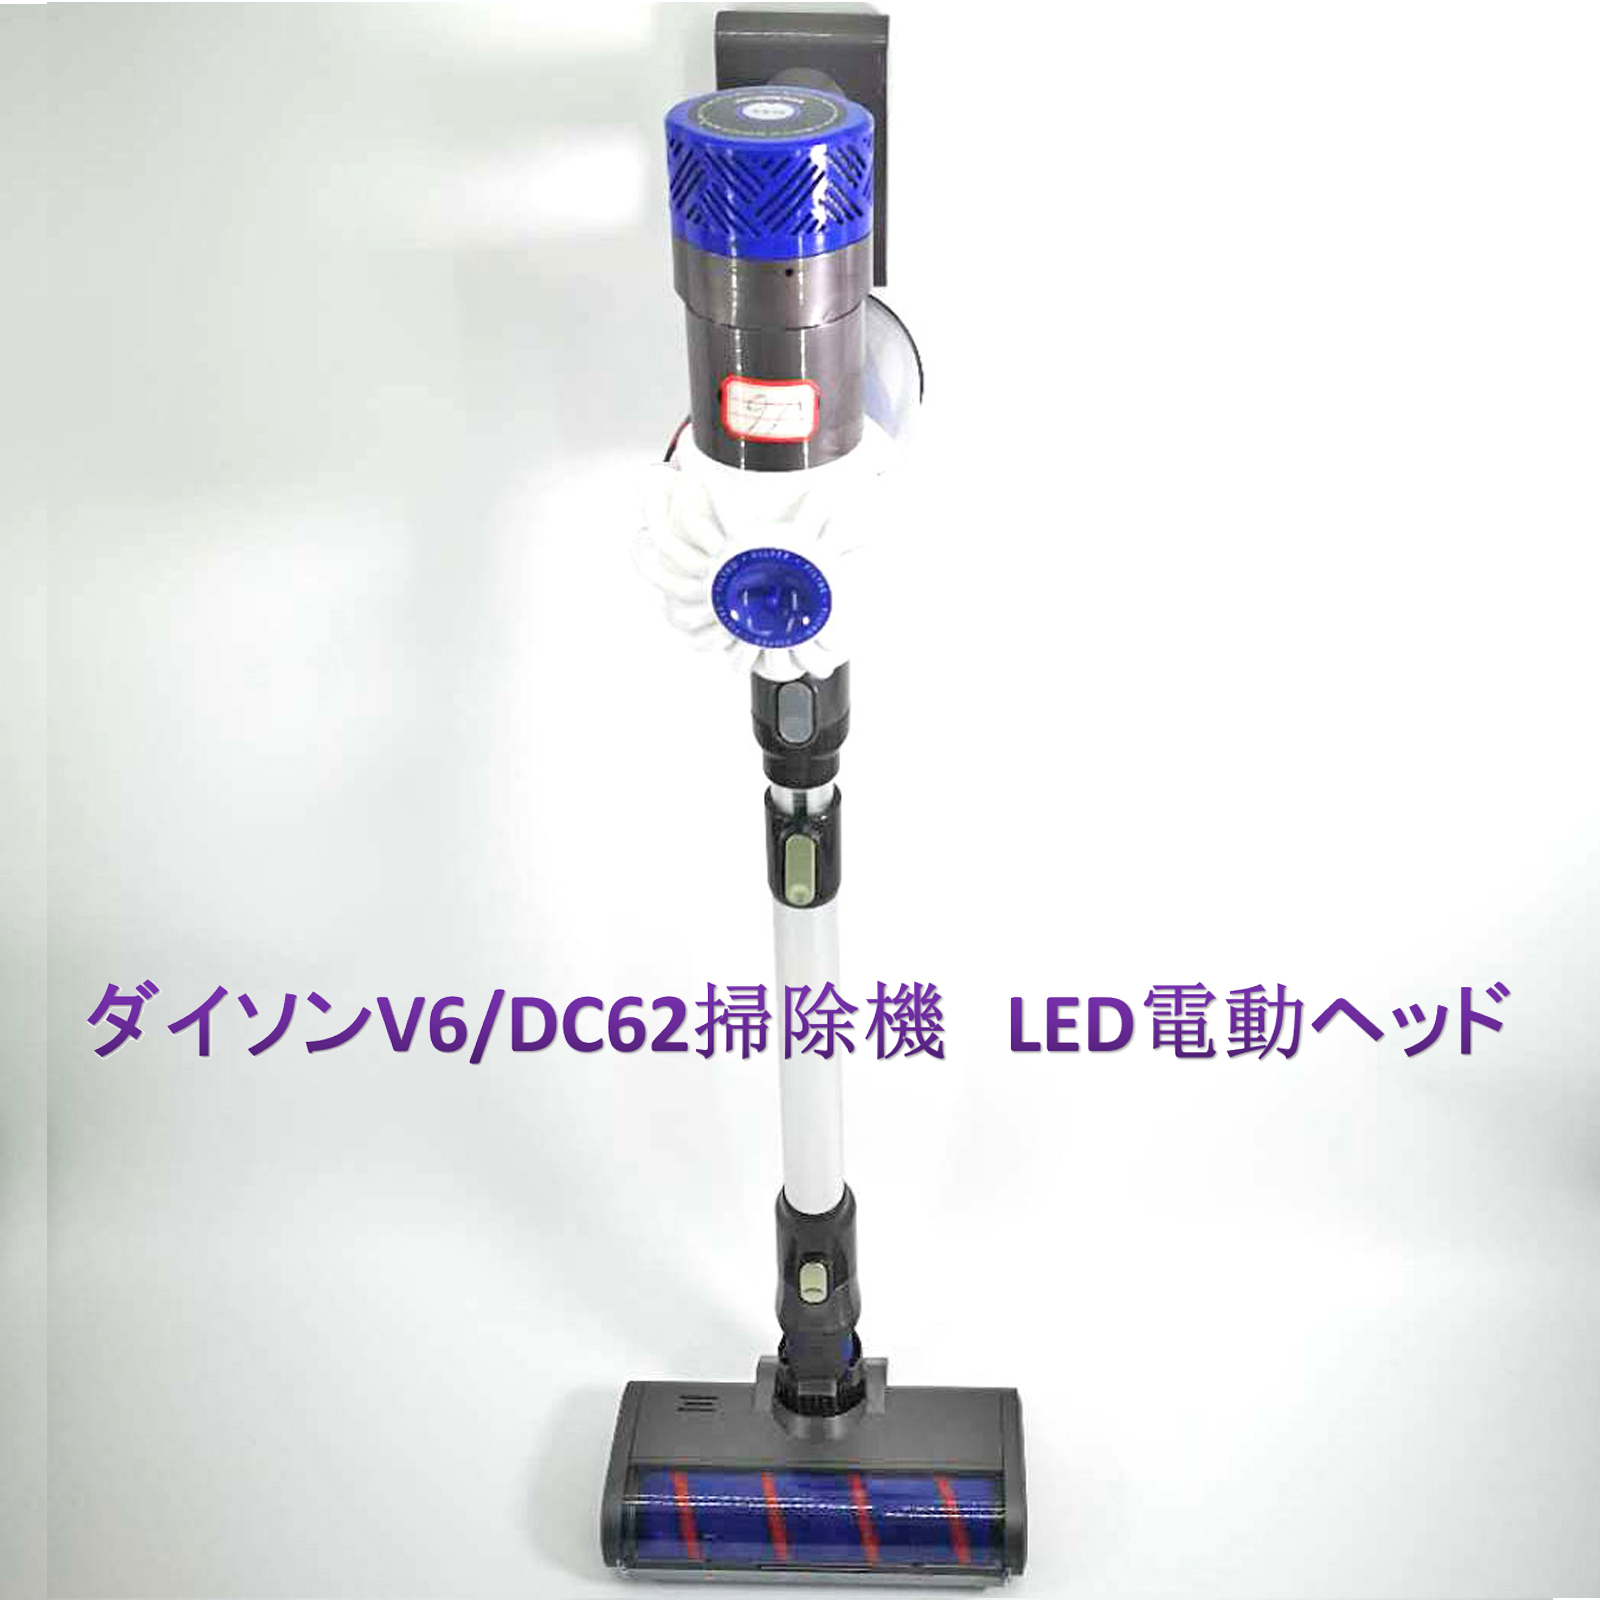 ダイソン v6 互換機 LEDソフトローラークリーナーヘッド